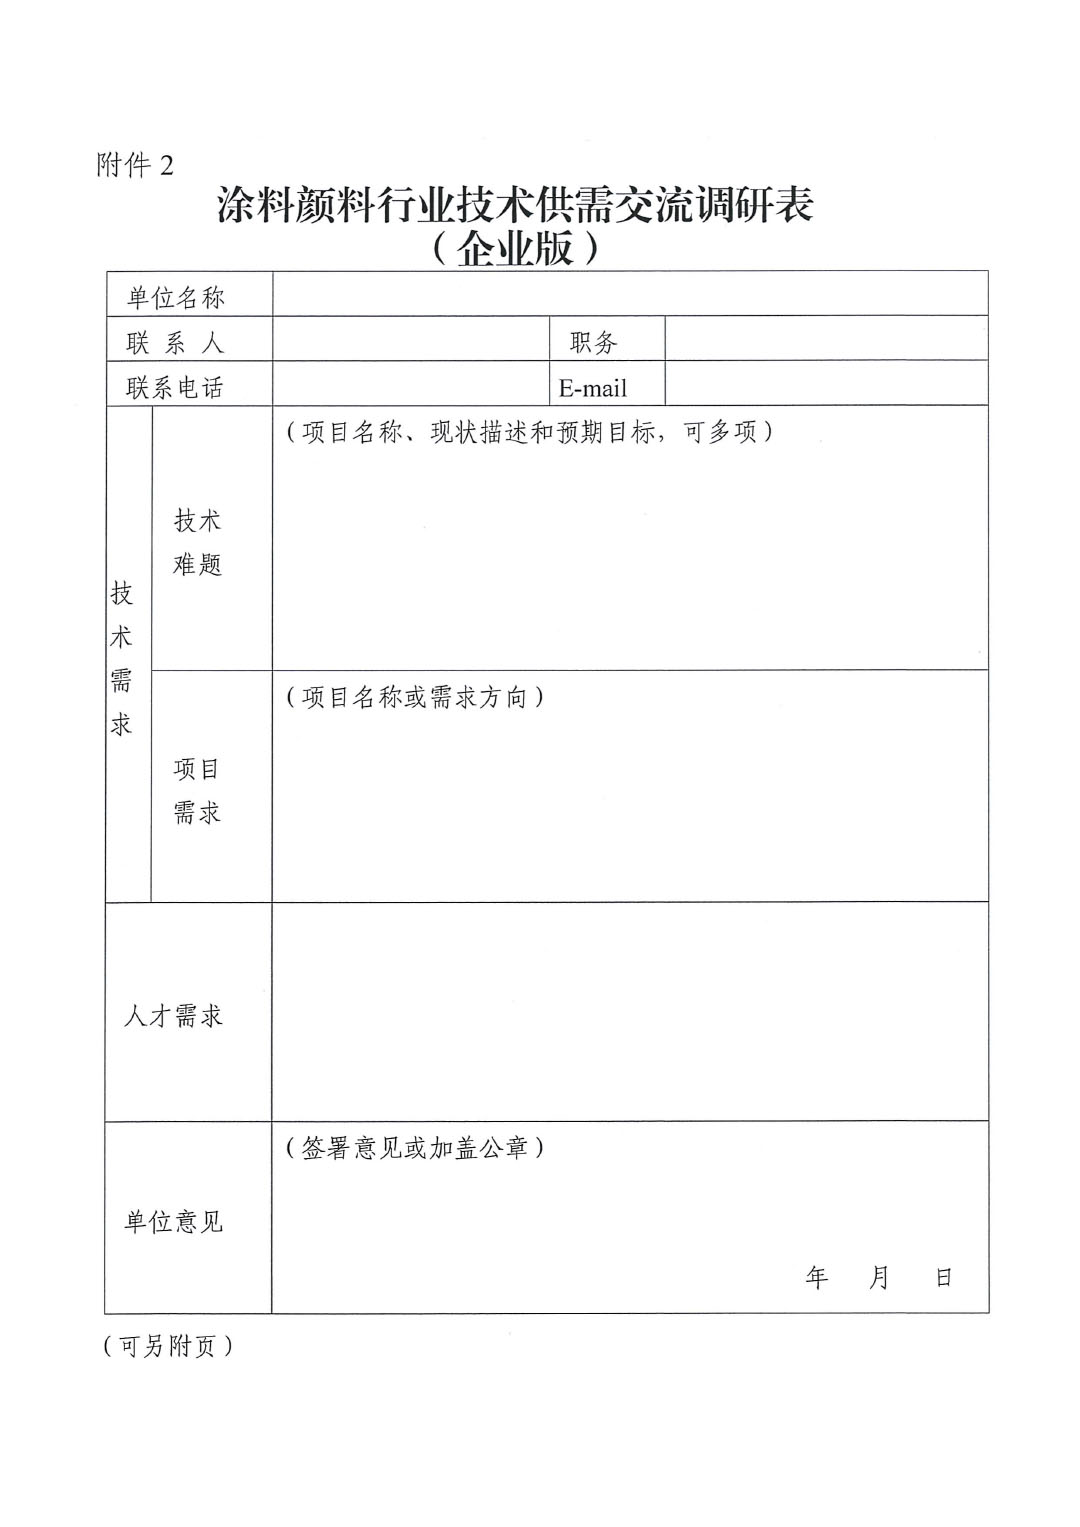 中国涂料行业产学研用及成果转化对接交流会的通知0430-4